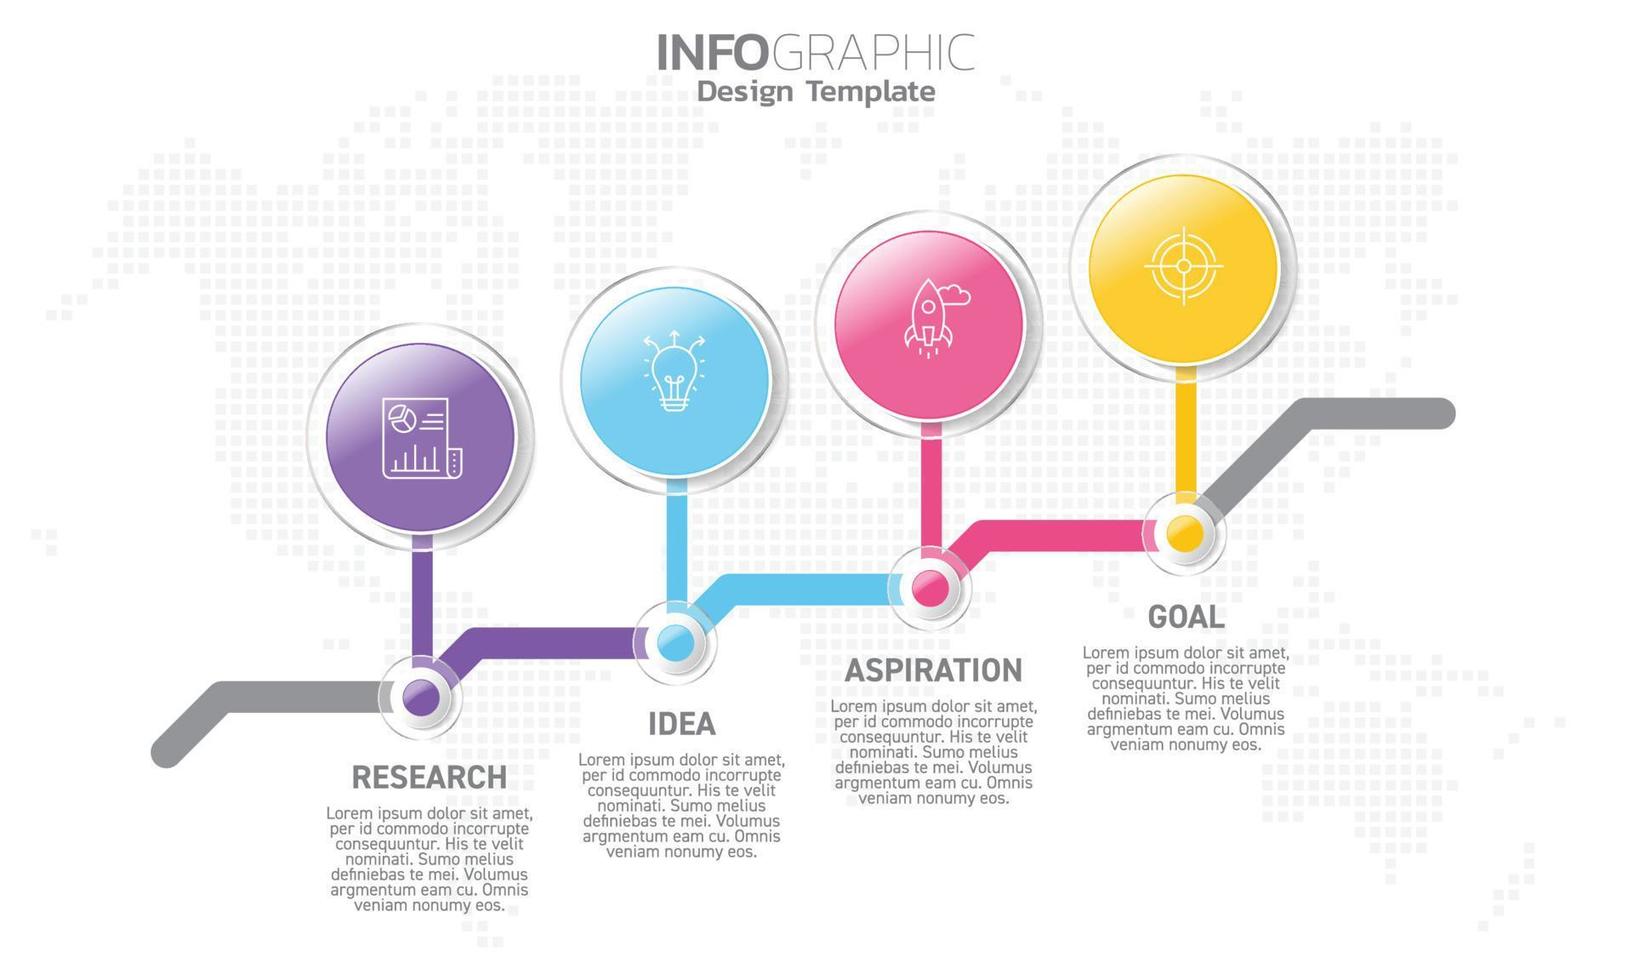 företag infographic 4 steg till Framgång med forskning aning inspiration och mål. vektor